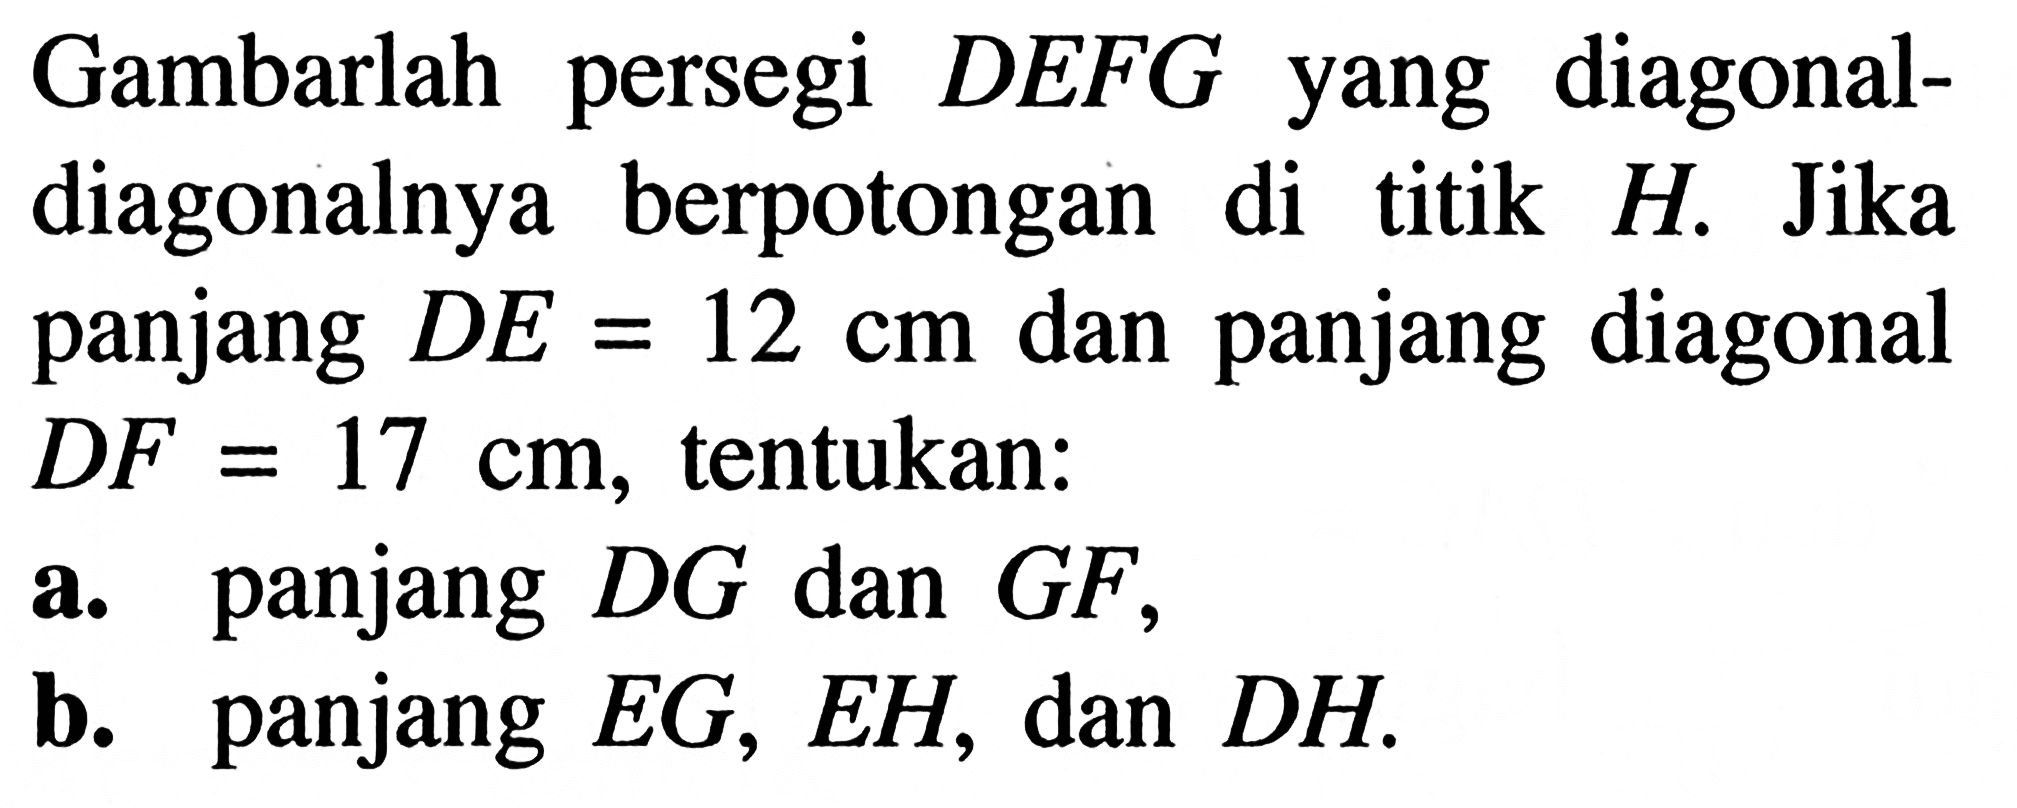 Gambarlah persegi DEFG yang diagonal-diagonalnya berpotongan di titik H. Jika panjang DE=12 cm dan panjang diagonal DF=17 cm, tentukan:a. panjang DG dan GF,b. panjang EG, EH, dan DH.